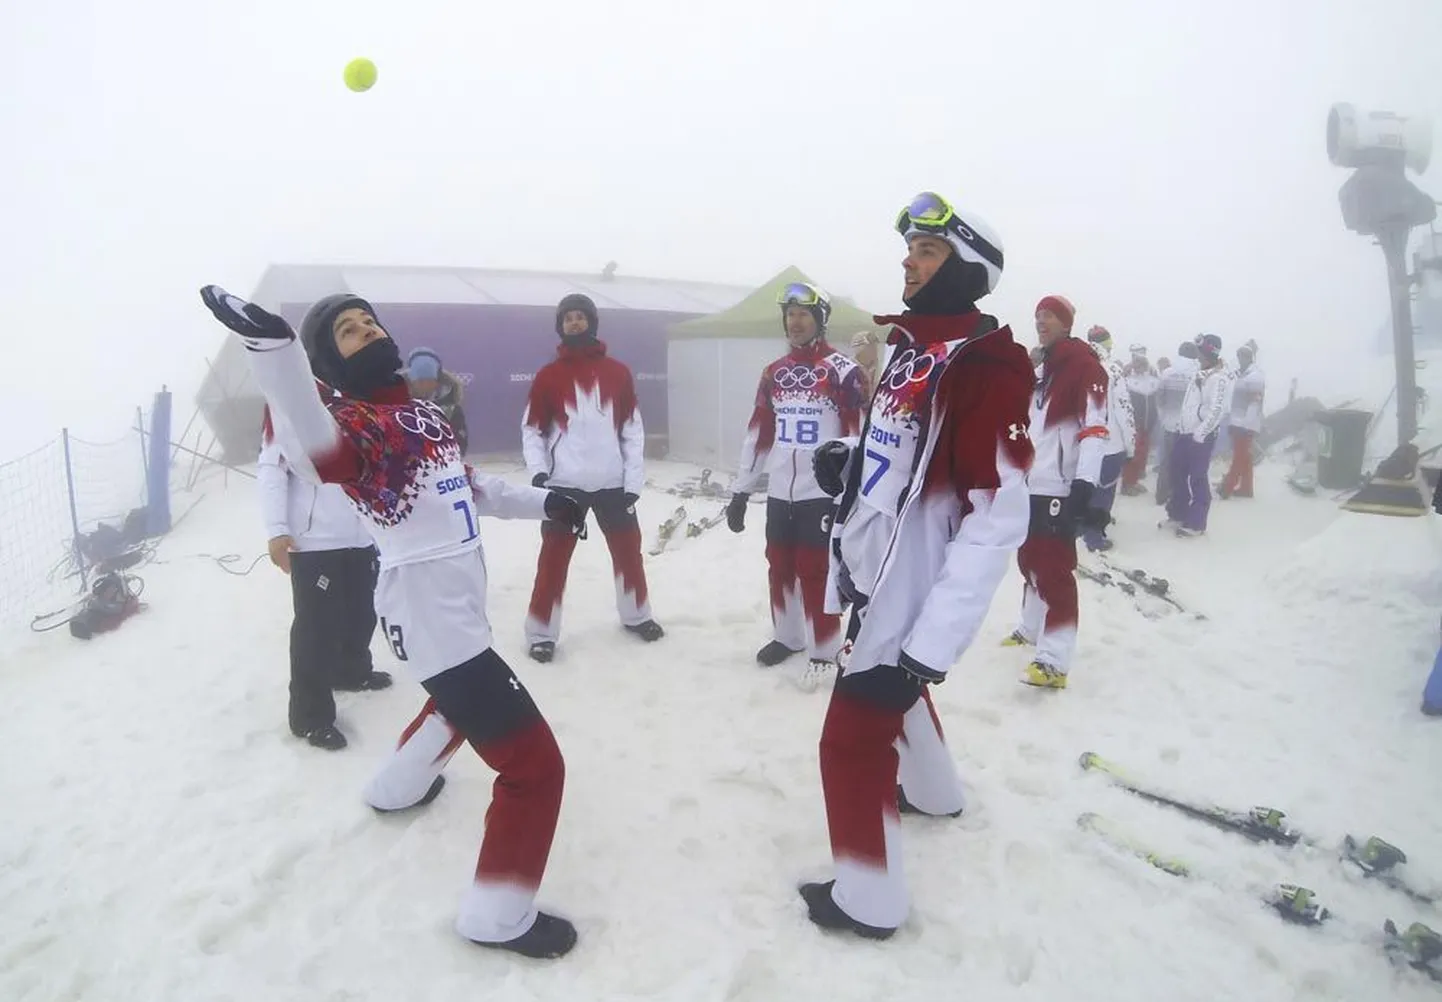 Kanada lumelauakrossi tiimi liikmed udusel mäetipul kohtunike otsust ootamas. Lõpuks lükati võistlus edasi.